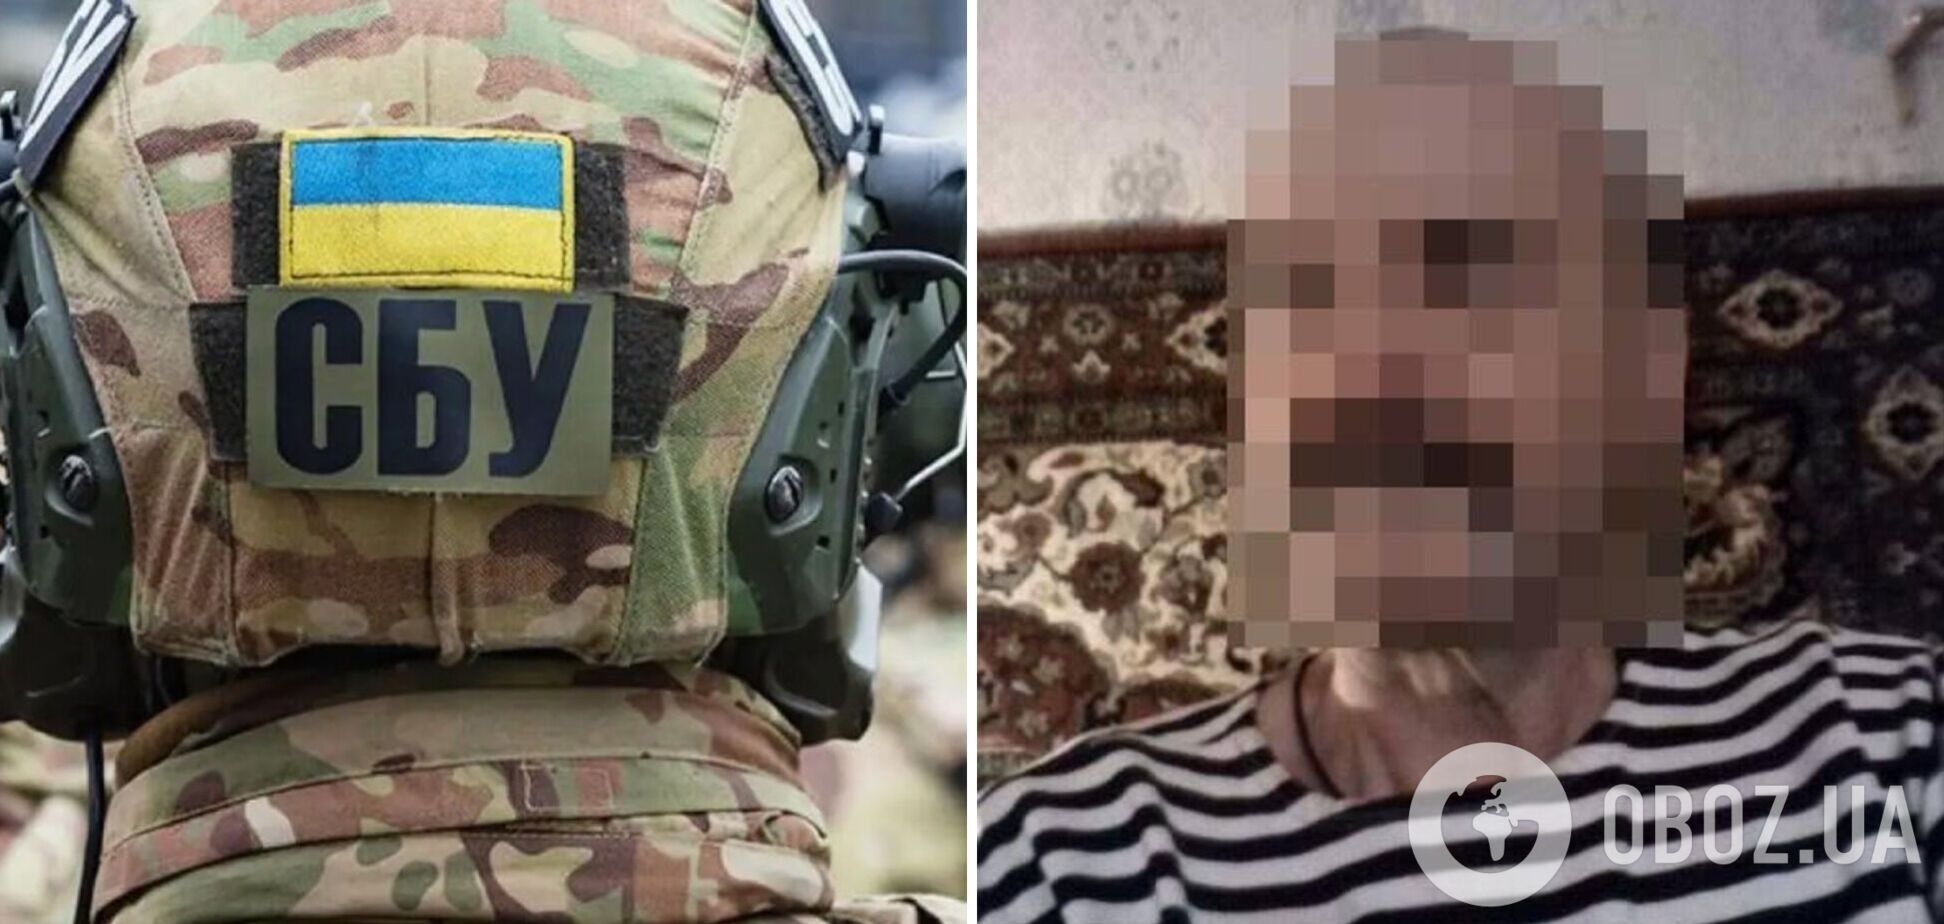 'Сливал' позиции защитников Мариуполя: суд отправил предателя Украины за решетку на 10 лет